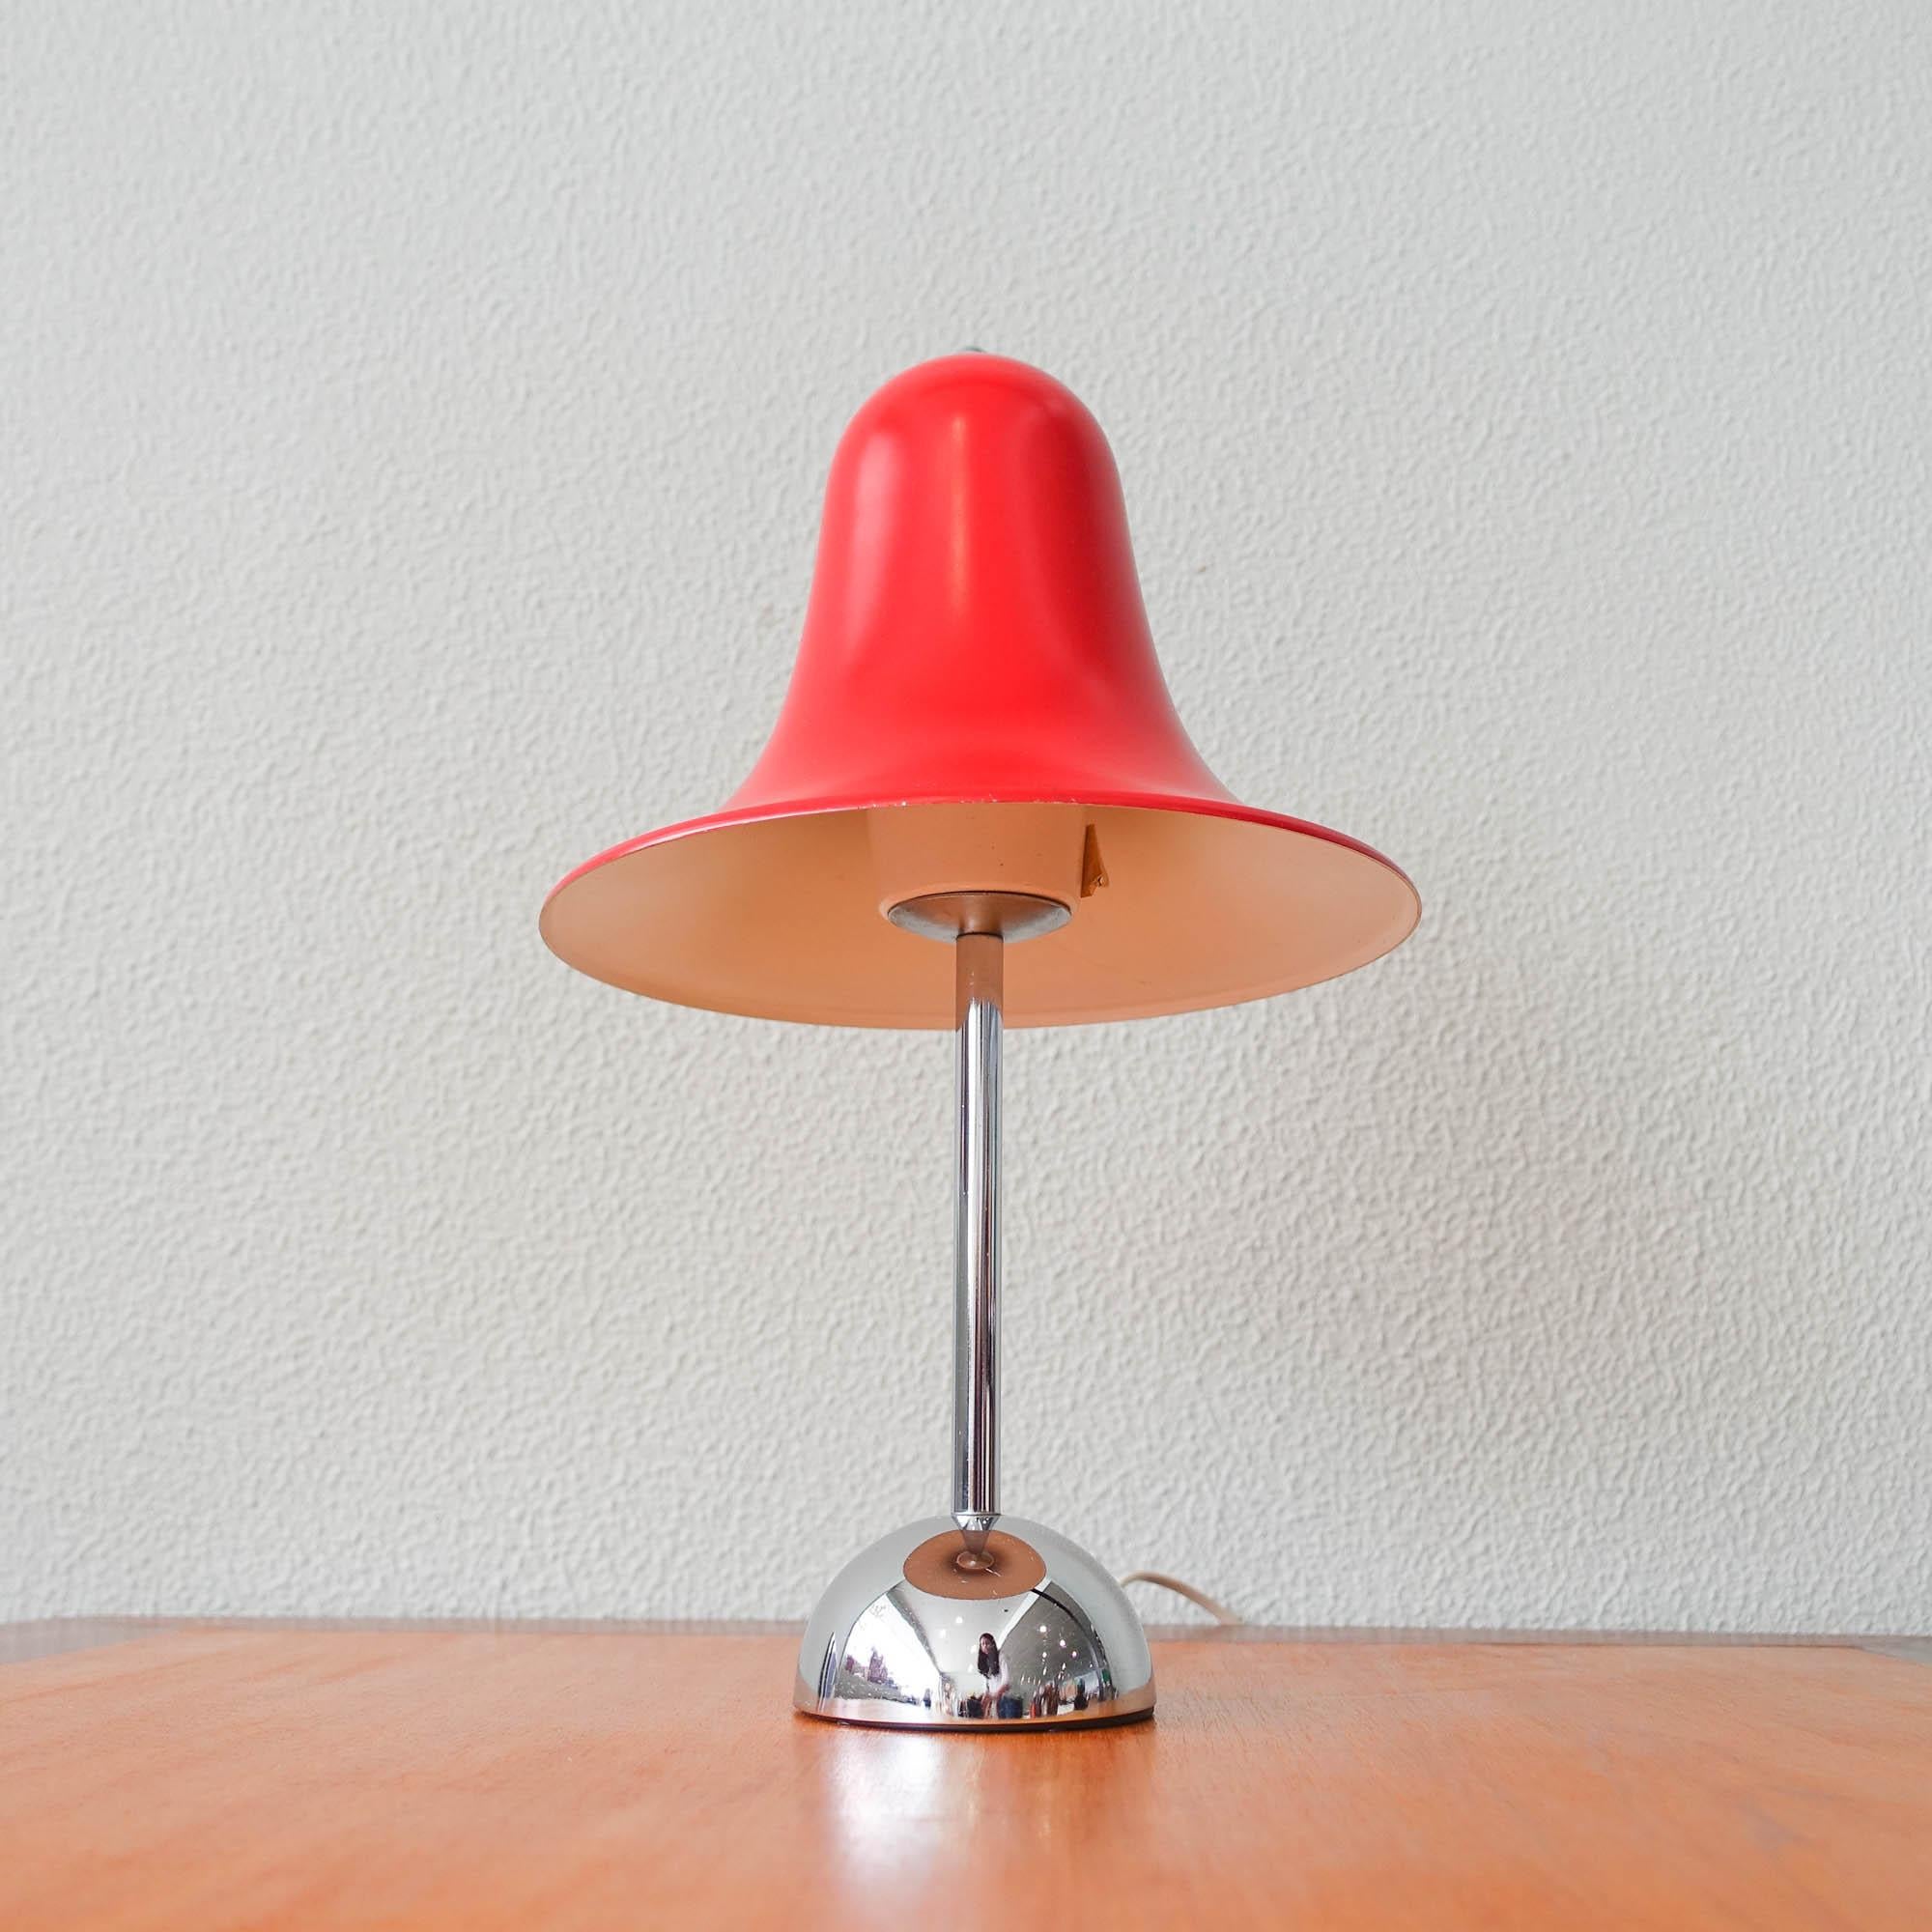 Danish Pantop D Table Lamp by Verner Panton for Elteva Danmark A/S